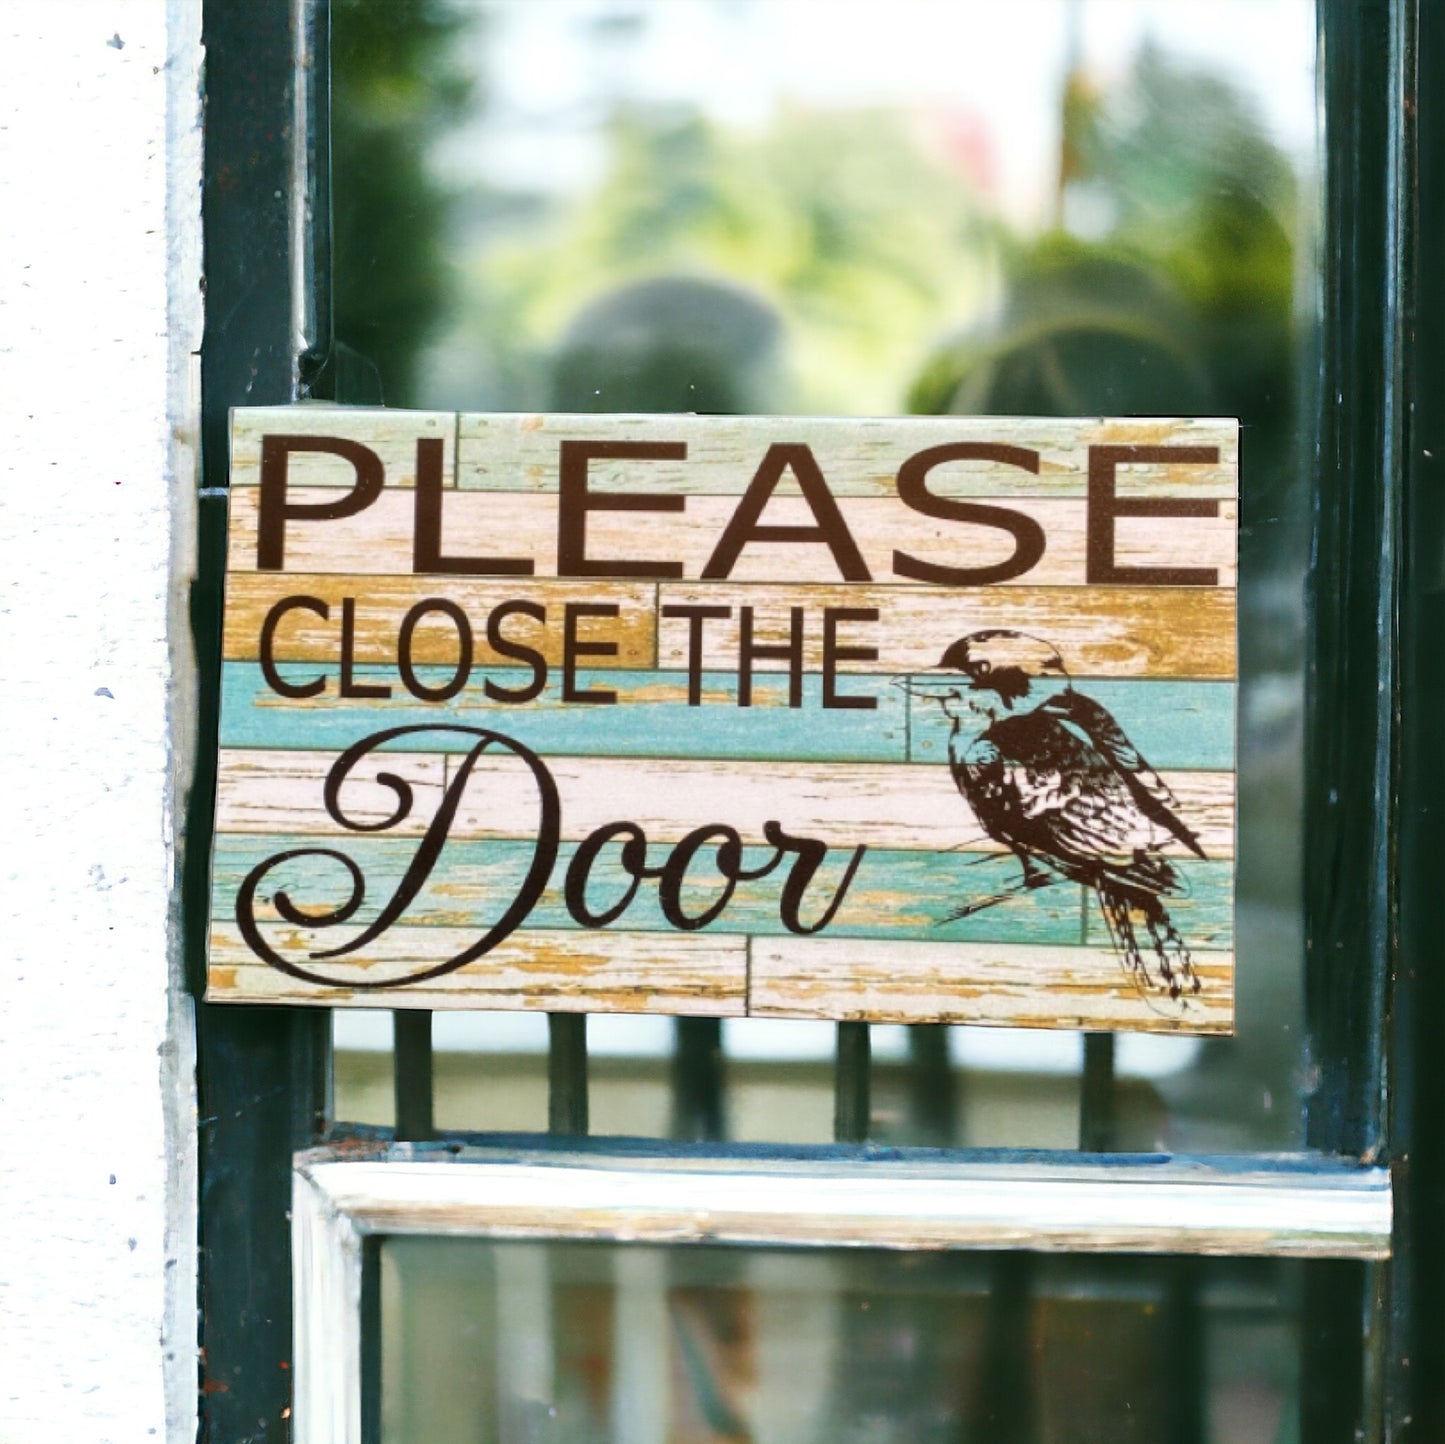 Close The Door with Kookaburra Bird Sign - The Renmy Store Homewares & Gifts 